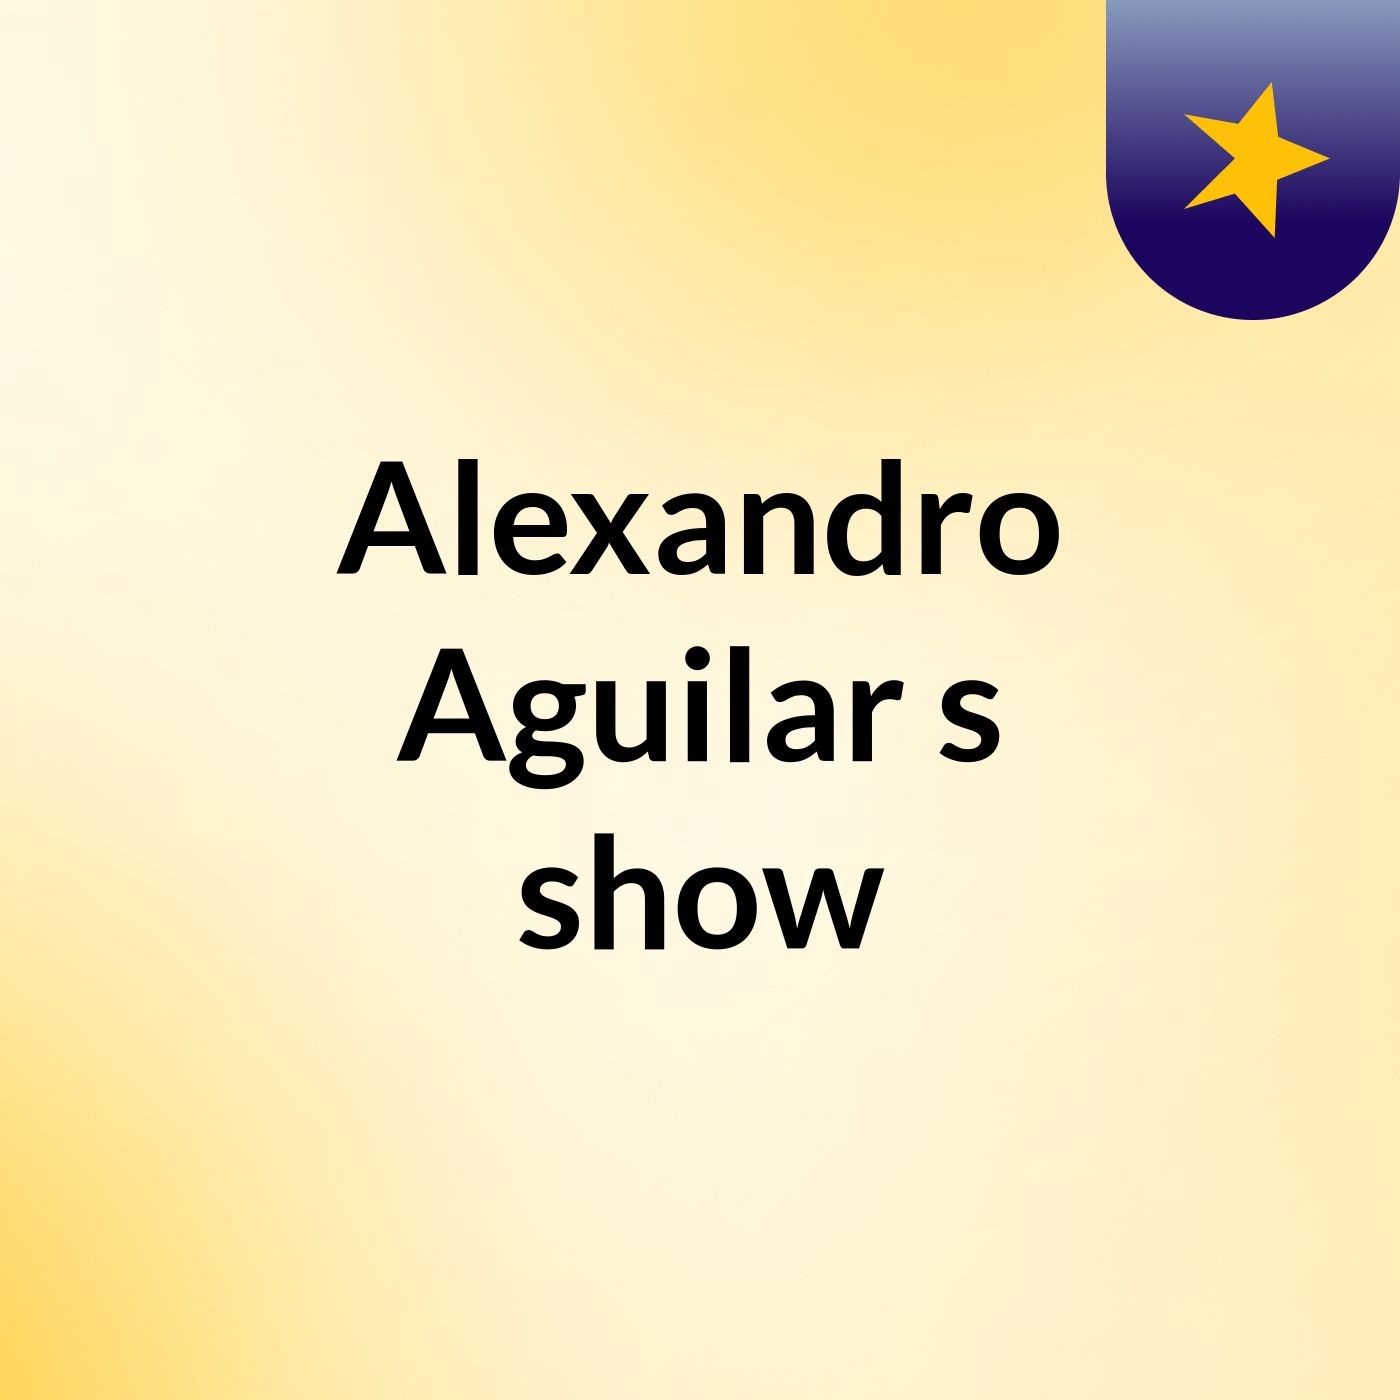 Alexandro Aguilar's show